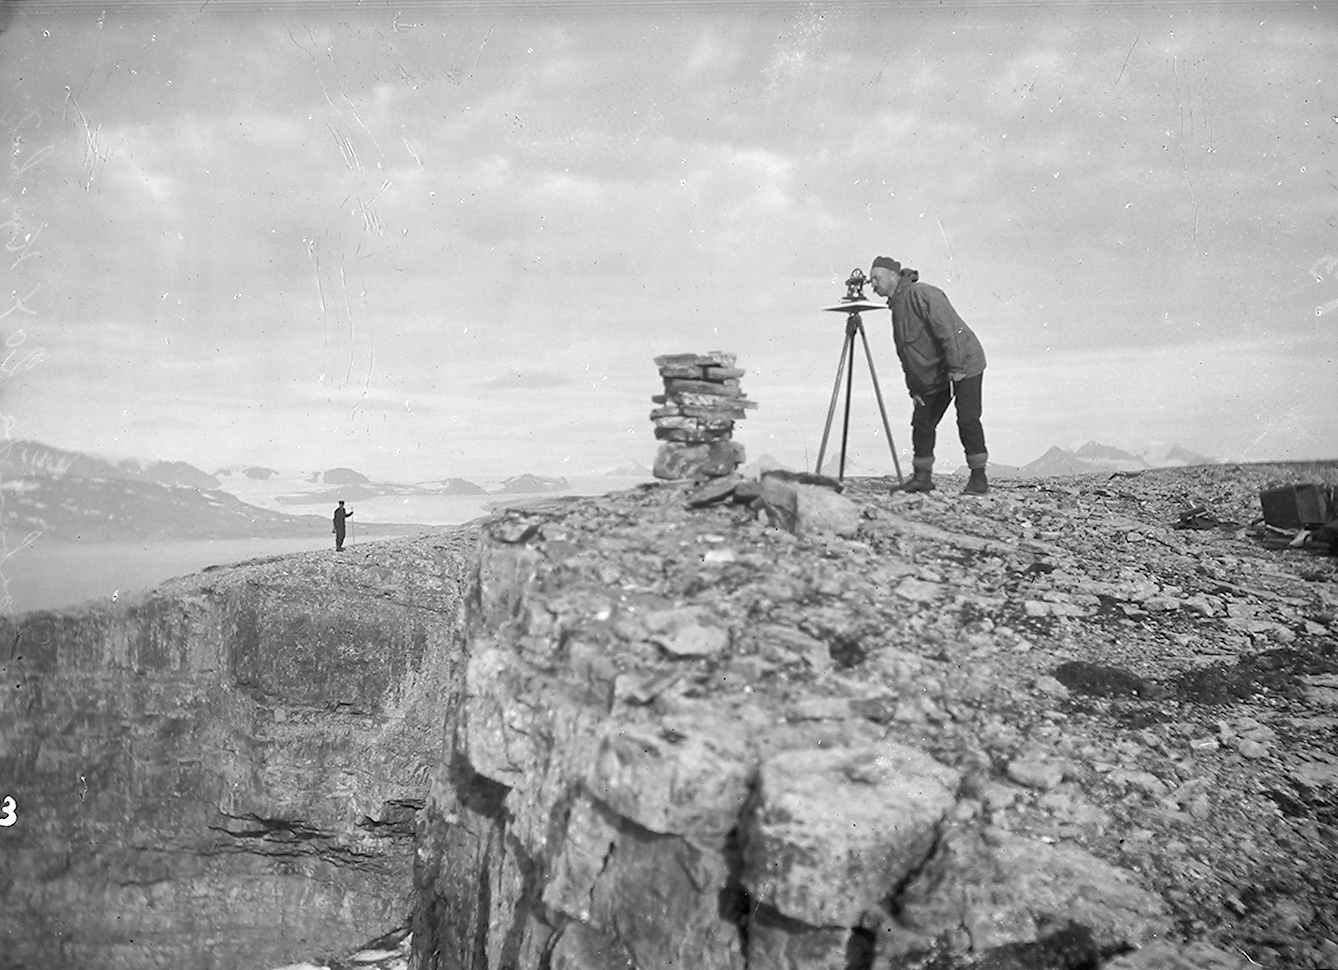 Mann med anorakk ser gjennom et måleinstrument på en fjellpynt